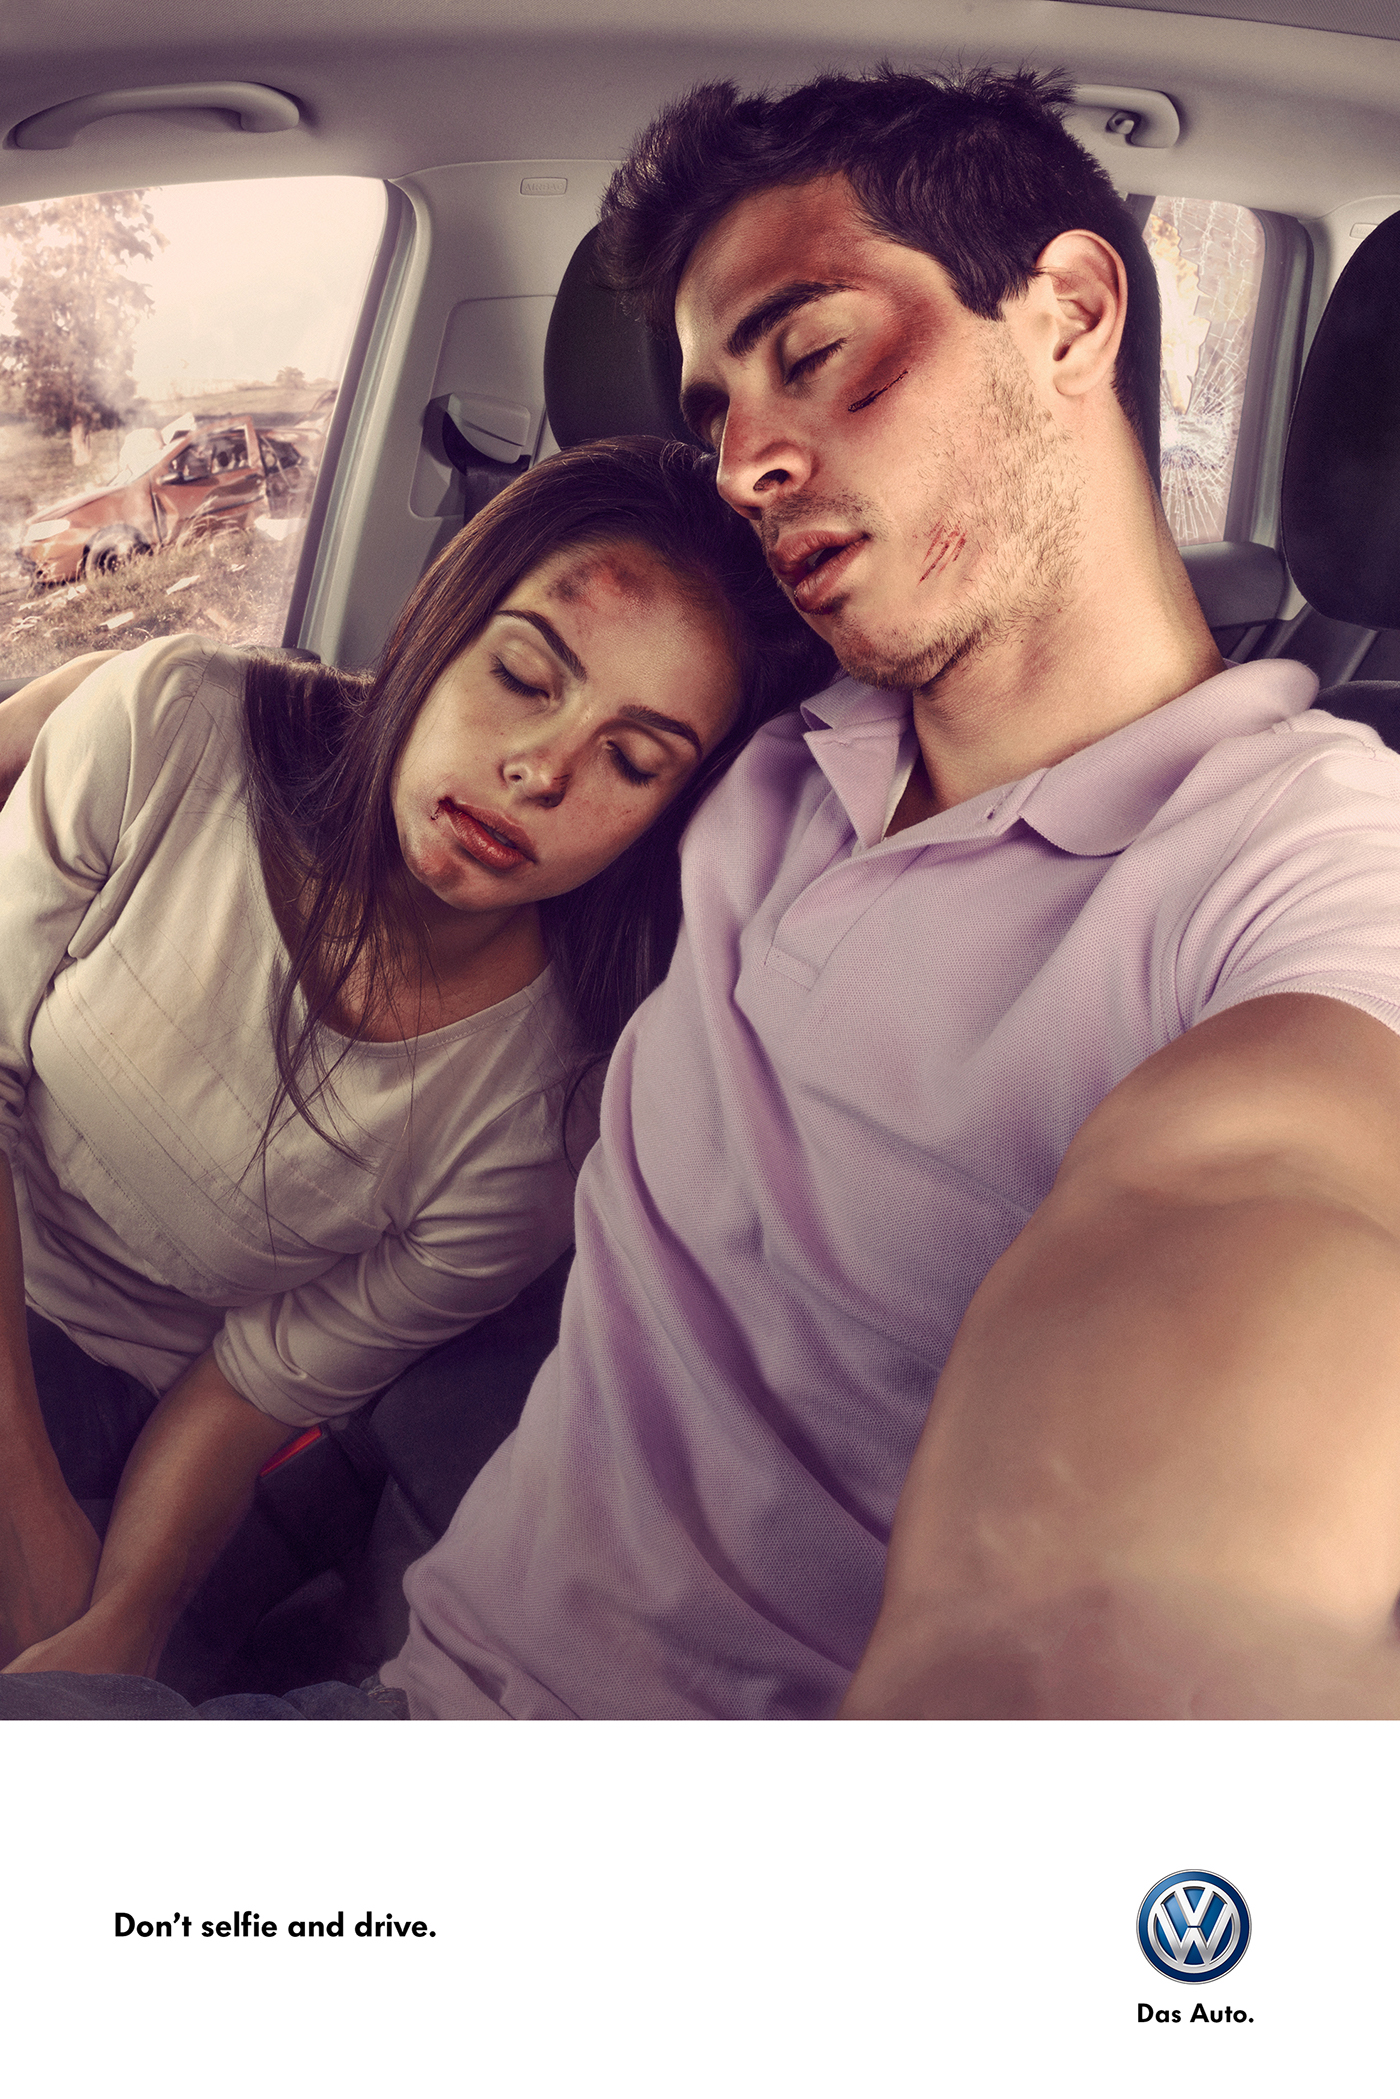 volkswagen friends couple guy accident crash automotive   car selfie traffic